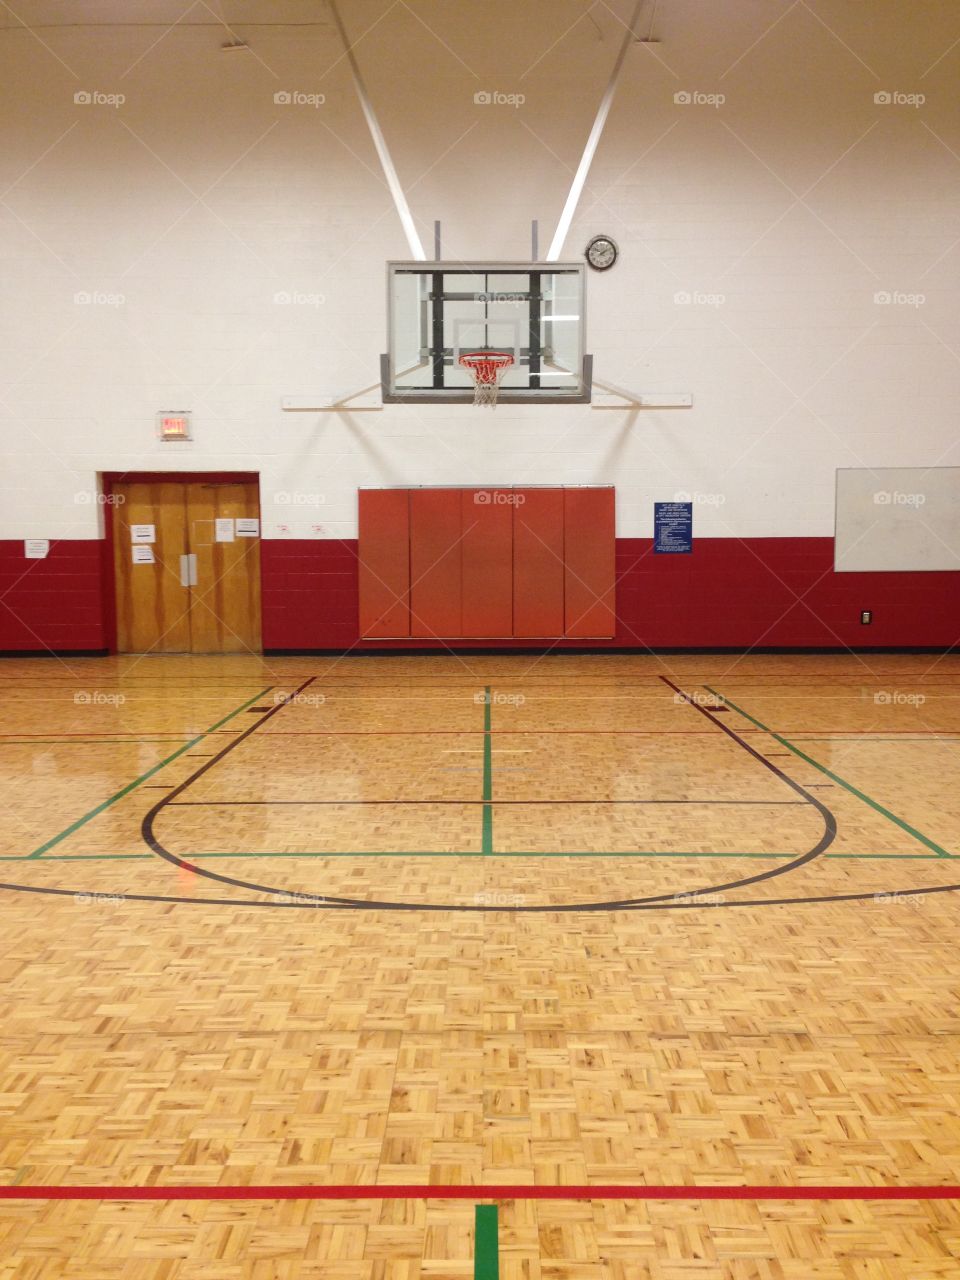 Basketball Gym.